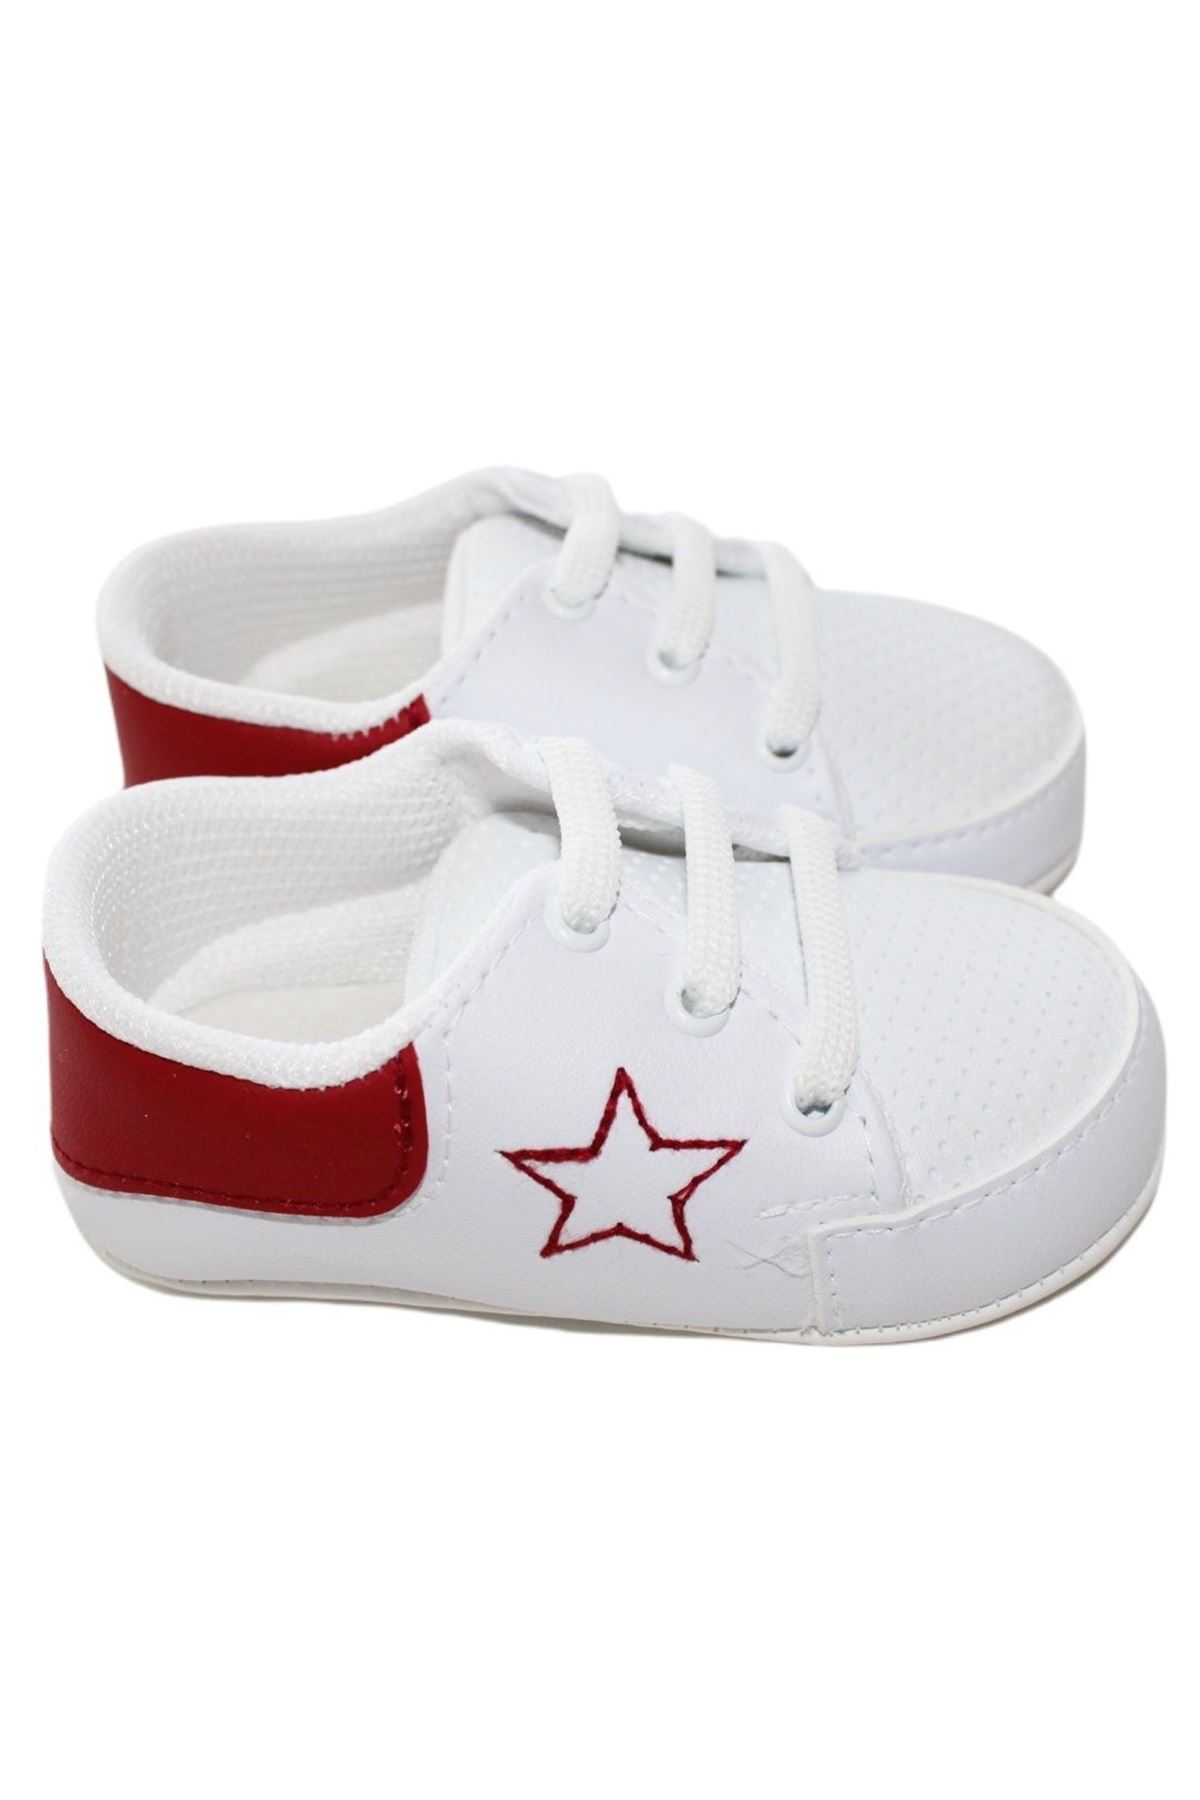 Unisex Bordo Yıldızlı Beyaz Bağcıklı Ayakkabı